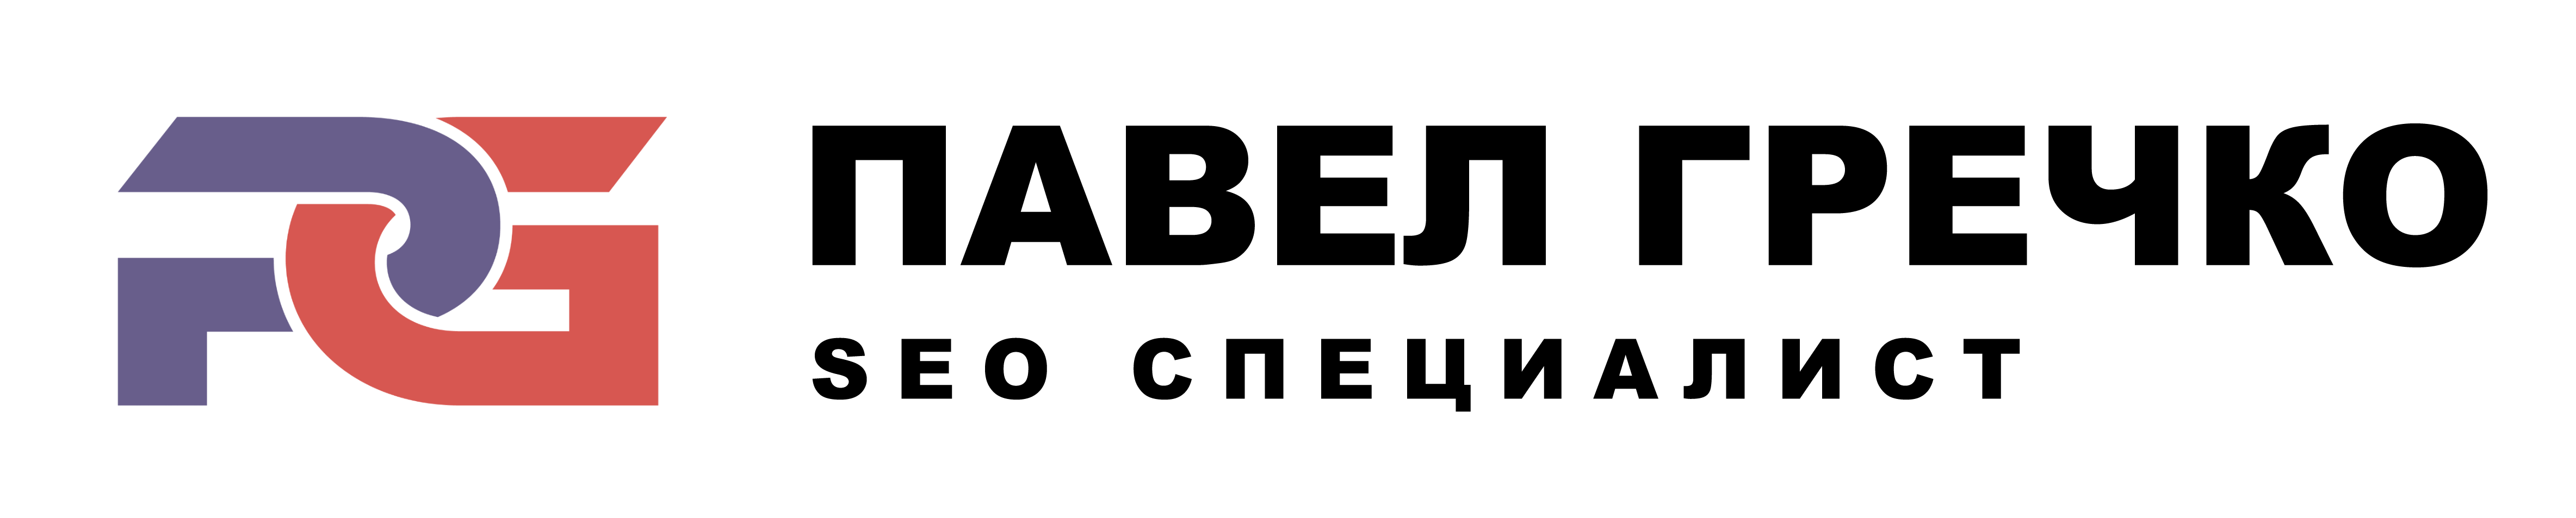 logo22 - Почему сайт упал в позициях и трафике в Яндекса